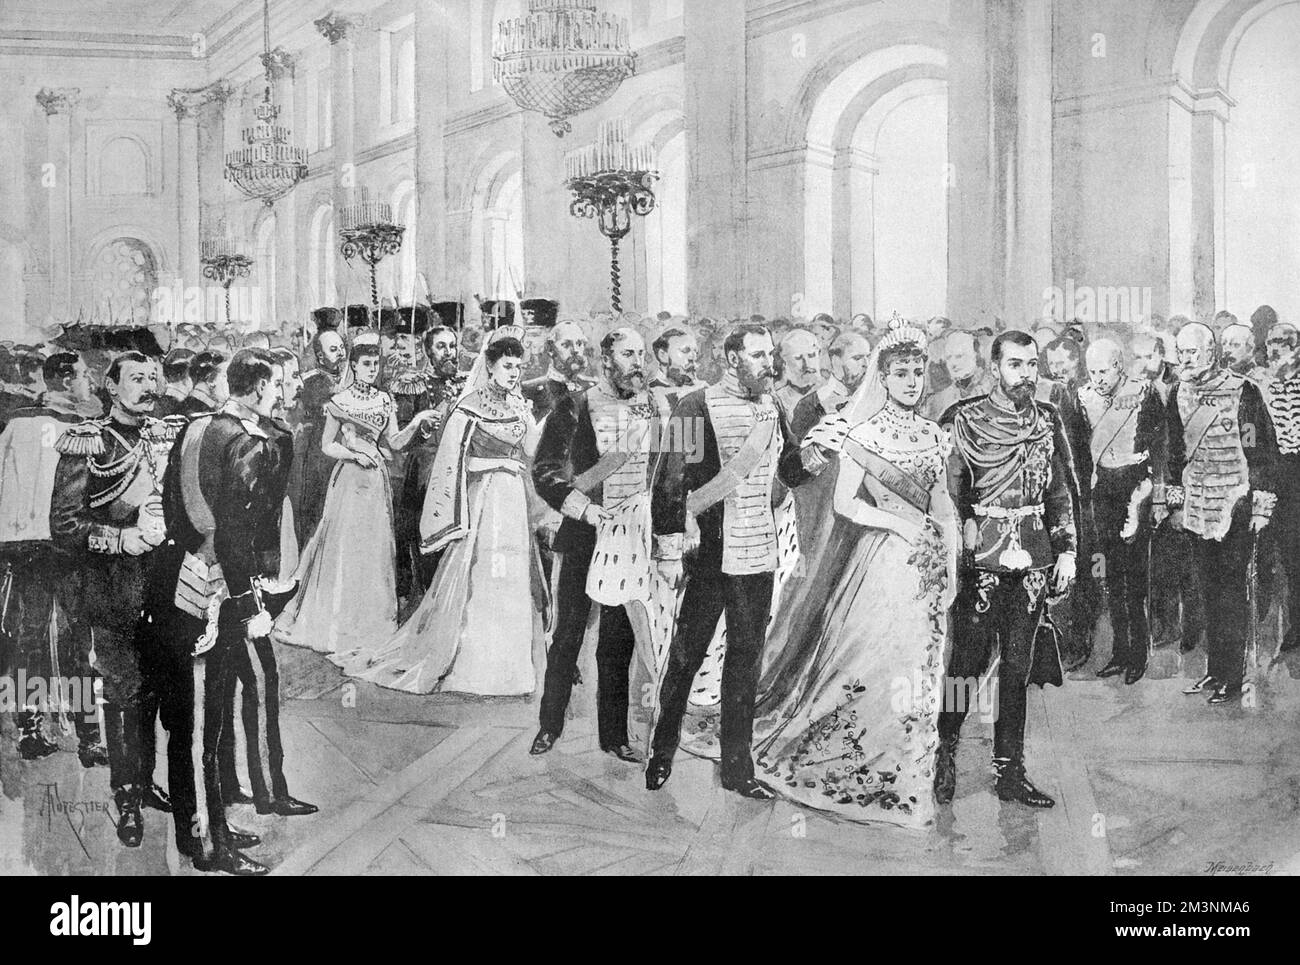 La procession allant à la chapelle du Palais d'hiver, pendant le mariage de Tsar Nicholas II et de la Grande duchesse Alexandra Feodorovna, princesse Alix de Hesse. Date : 26th novembre 1894 Banque D'Images